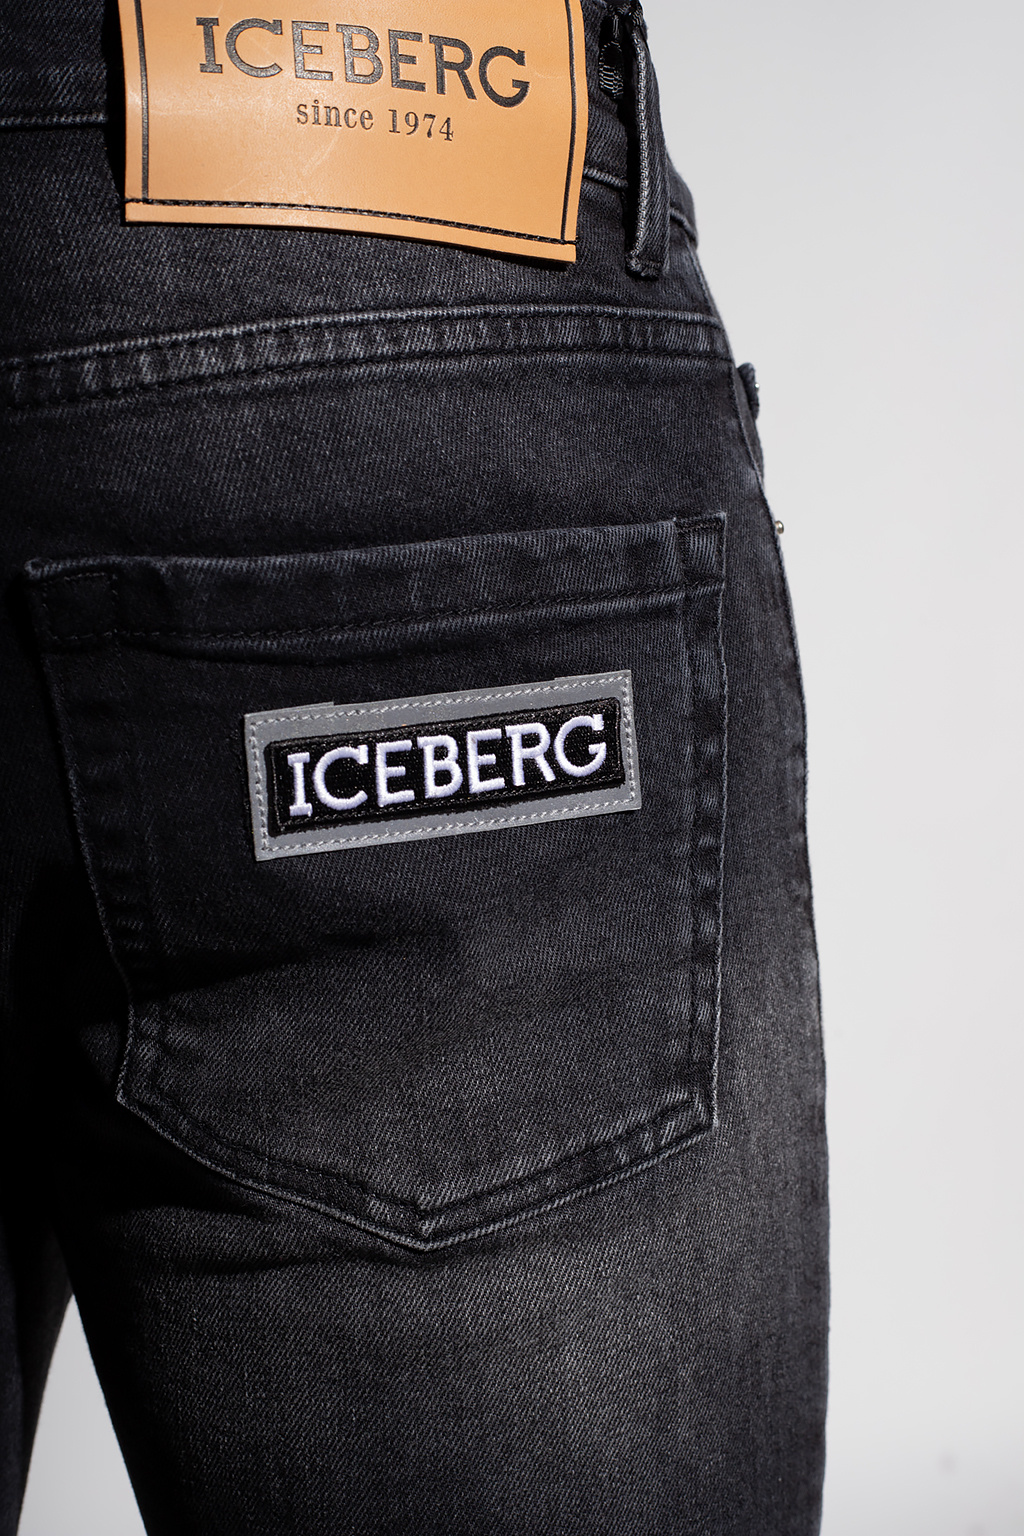 Iceberg Skinny | Men's Clothing | Vitkac